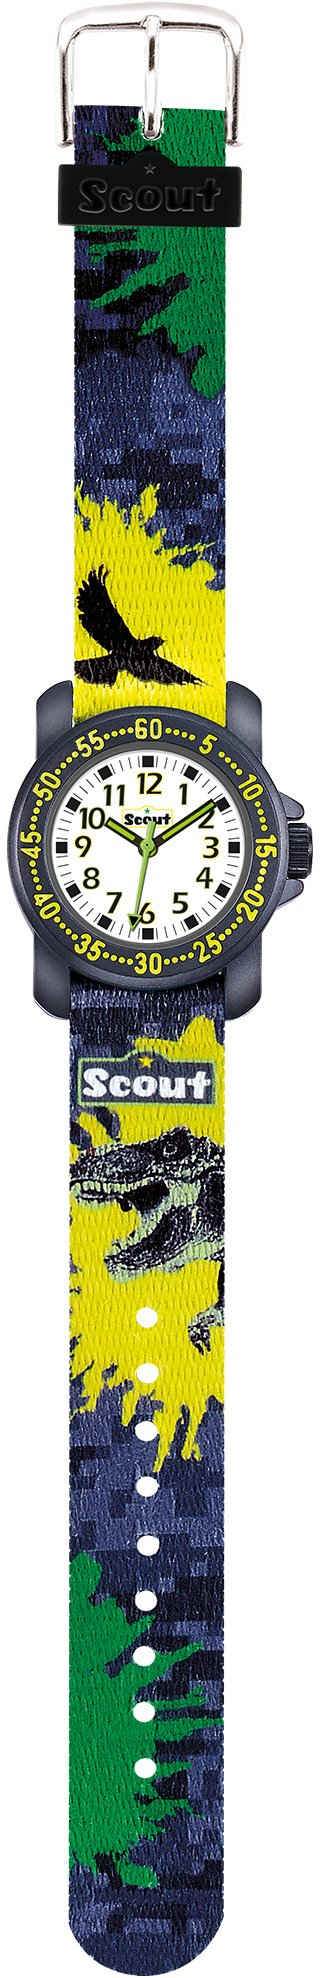 Scout Quarzuhr Action Boys, 280376039, Dinosaurieruhr, Lernuhr, Dinosauriermotiv, ideal auch als Geschenk